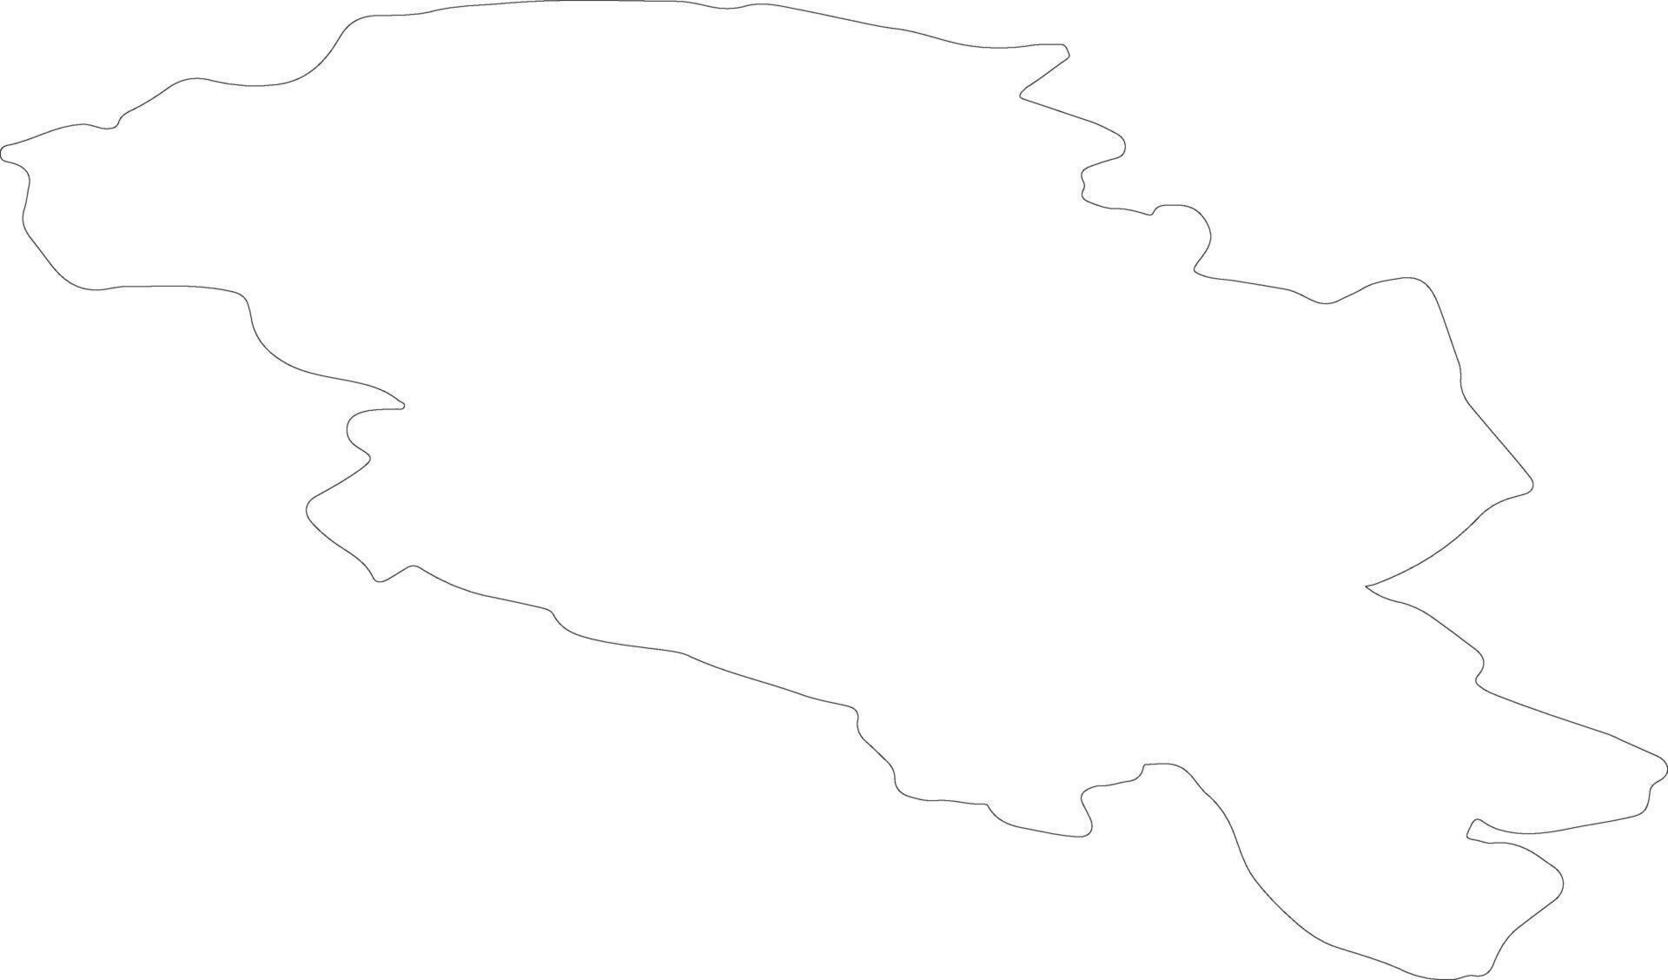 oppland Noruega esboço mapa vetor